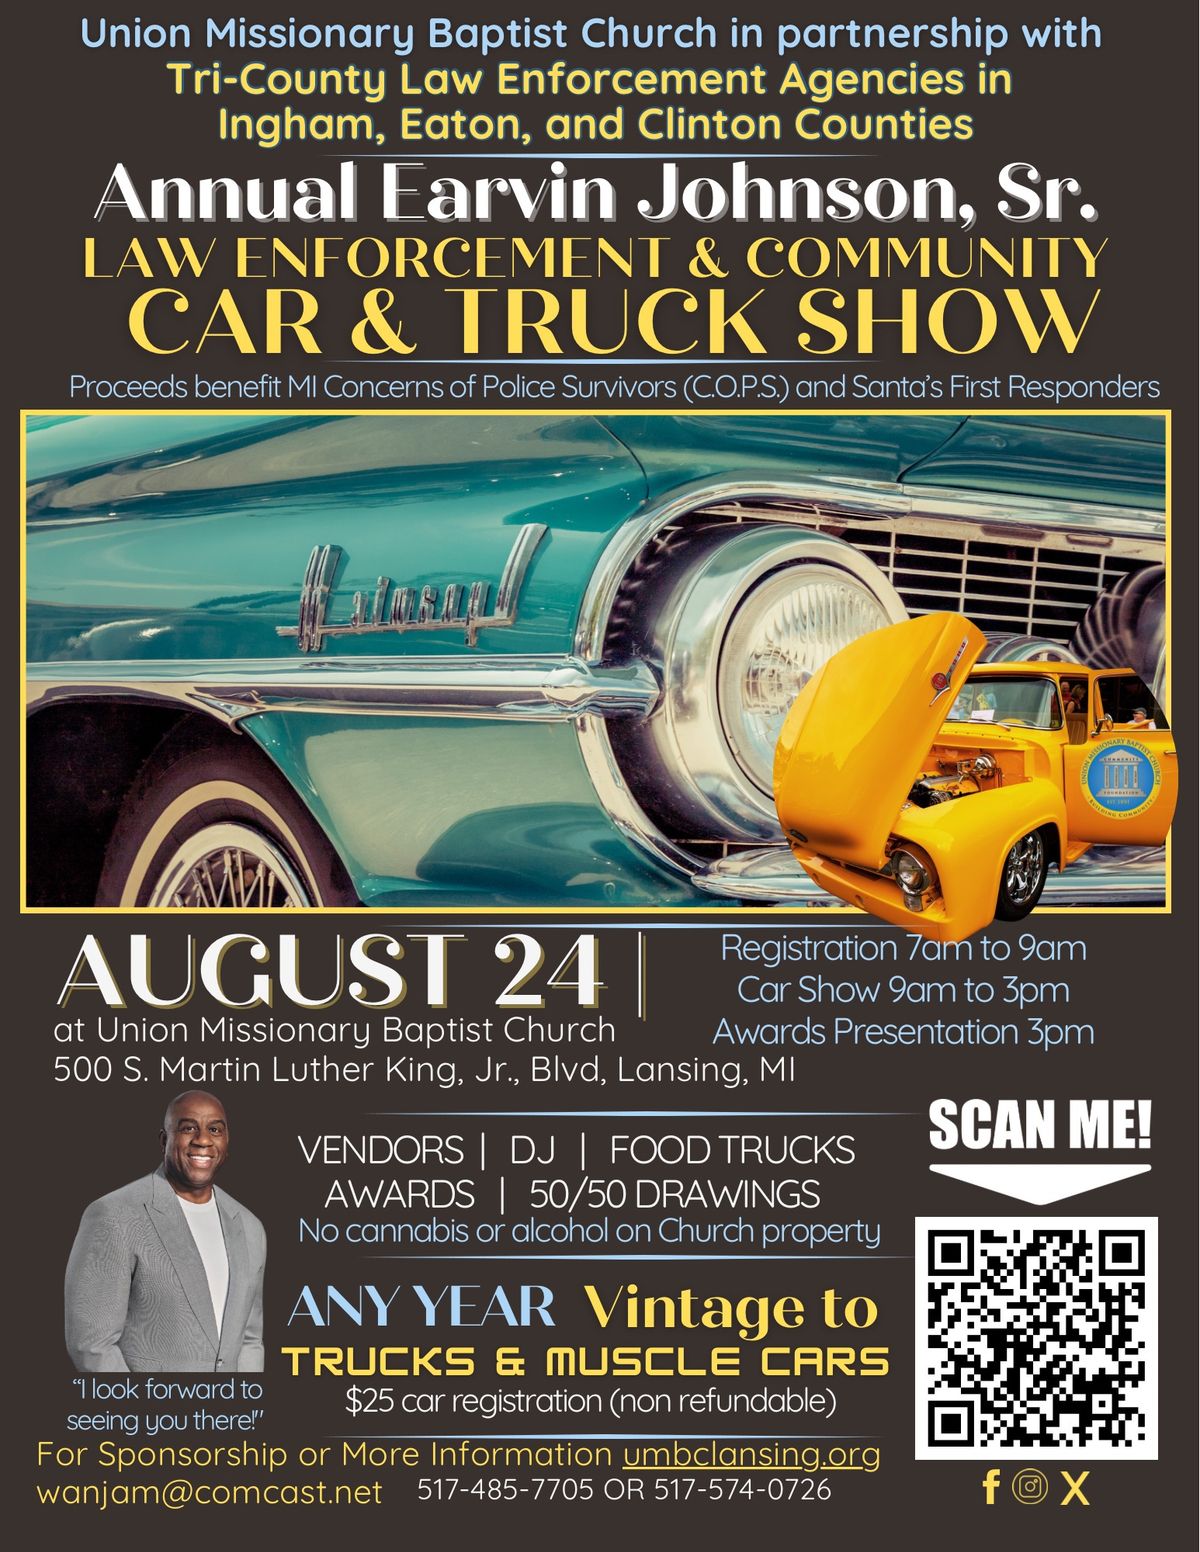 Annual Earvin Johnson, Sr. Law Enforcement & Community Car & Truck Show